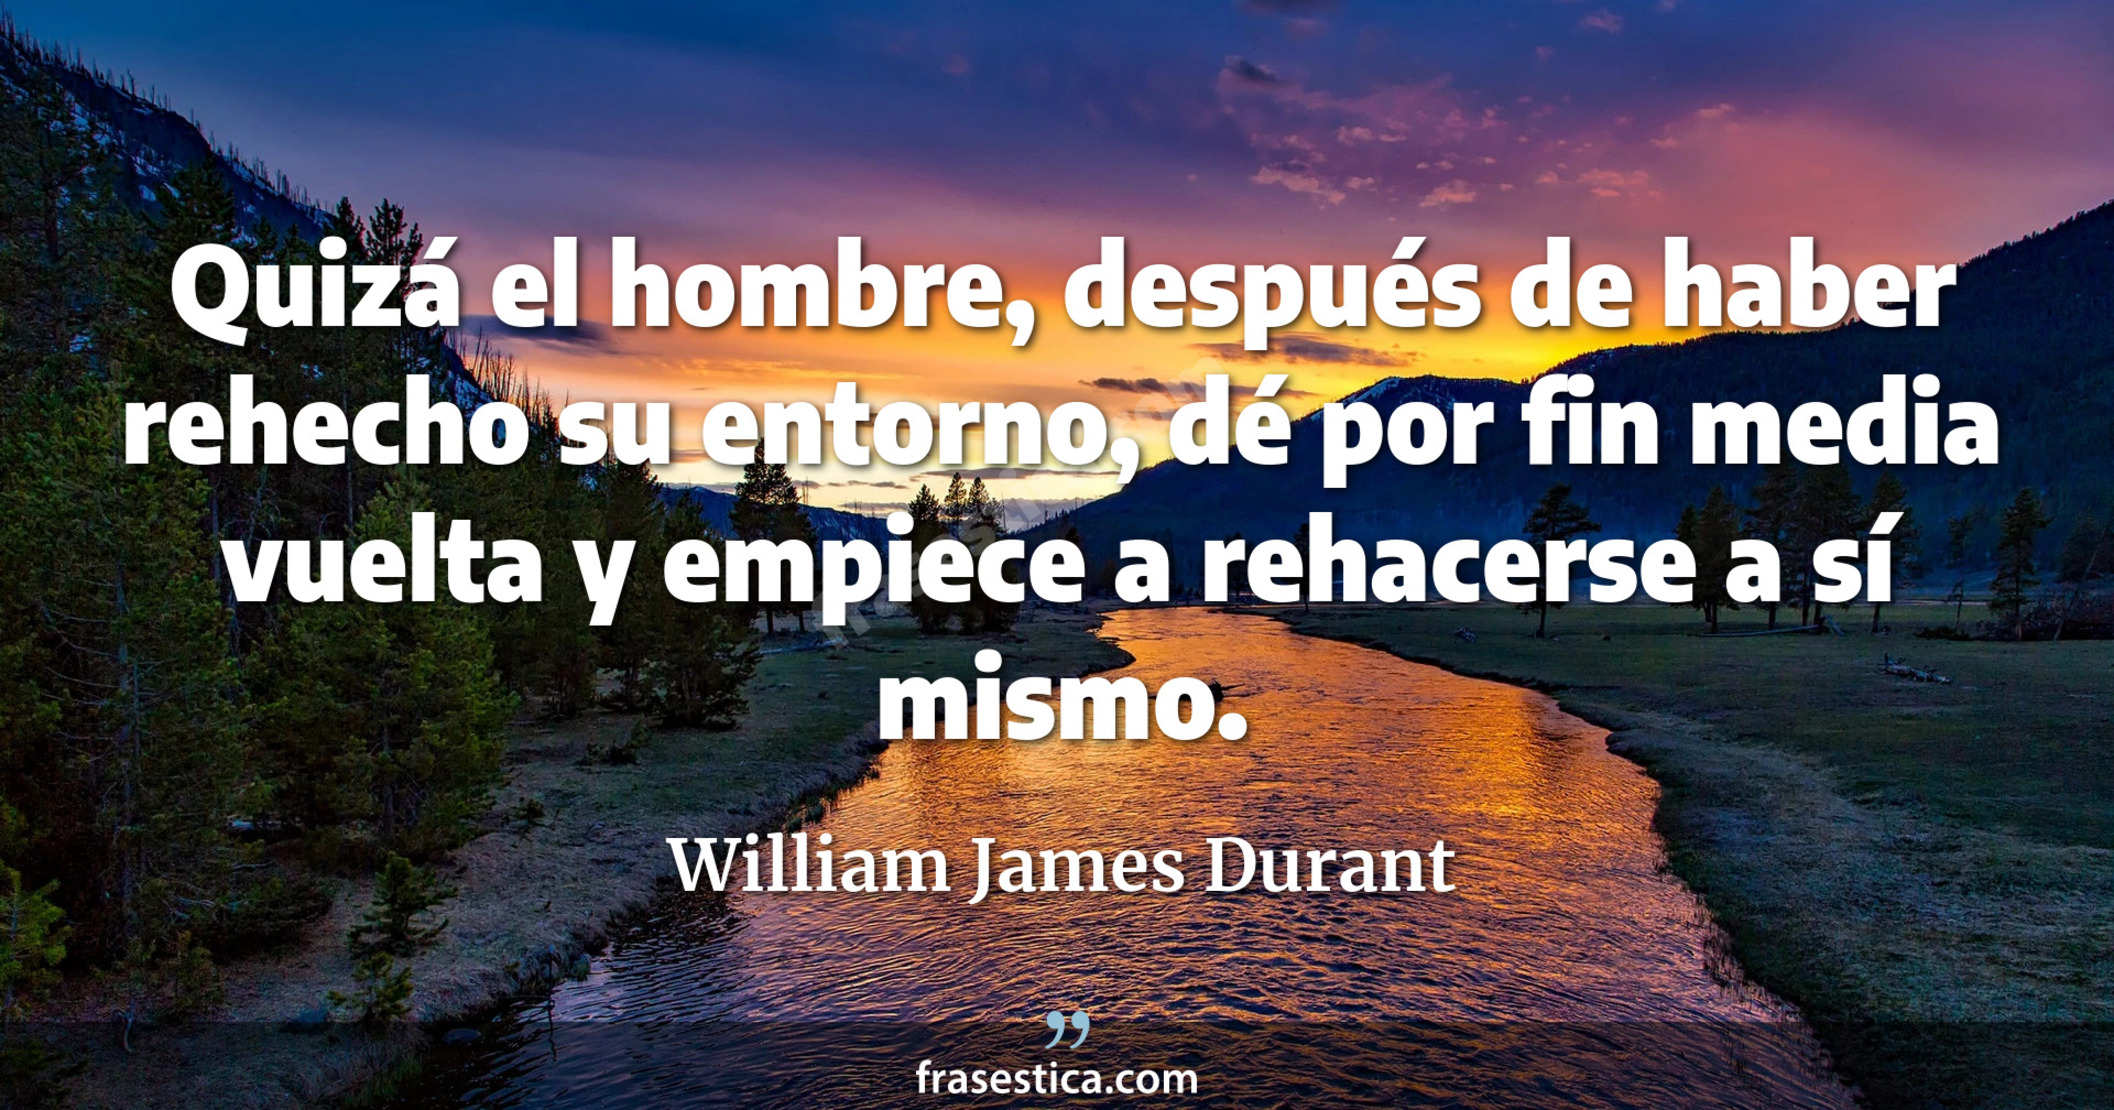 Quizá el hombre, después de haber rehecho su entorno, dé por fin media vuelta y empiece a rehacerse a sí mismo. - William James Durant